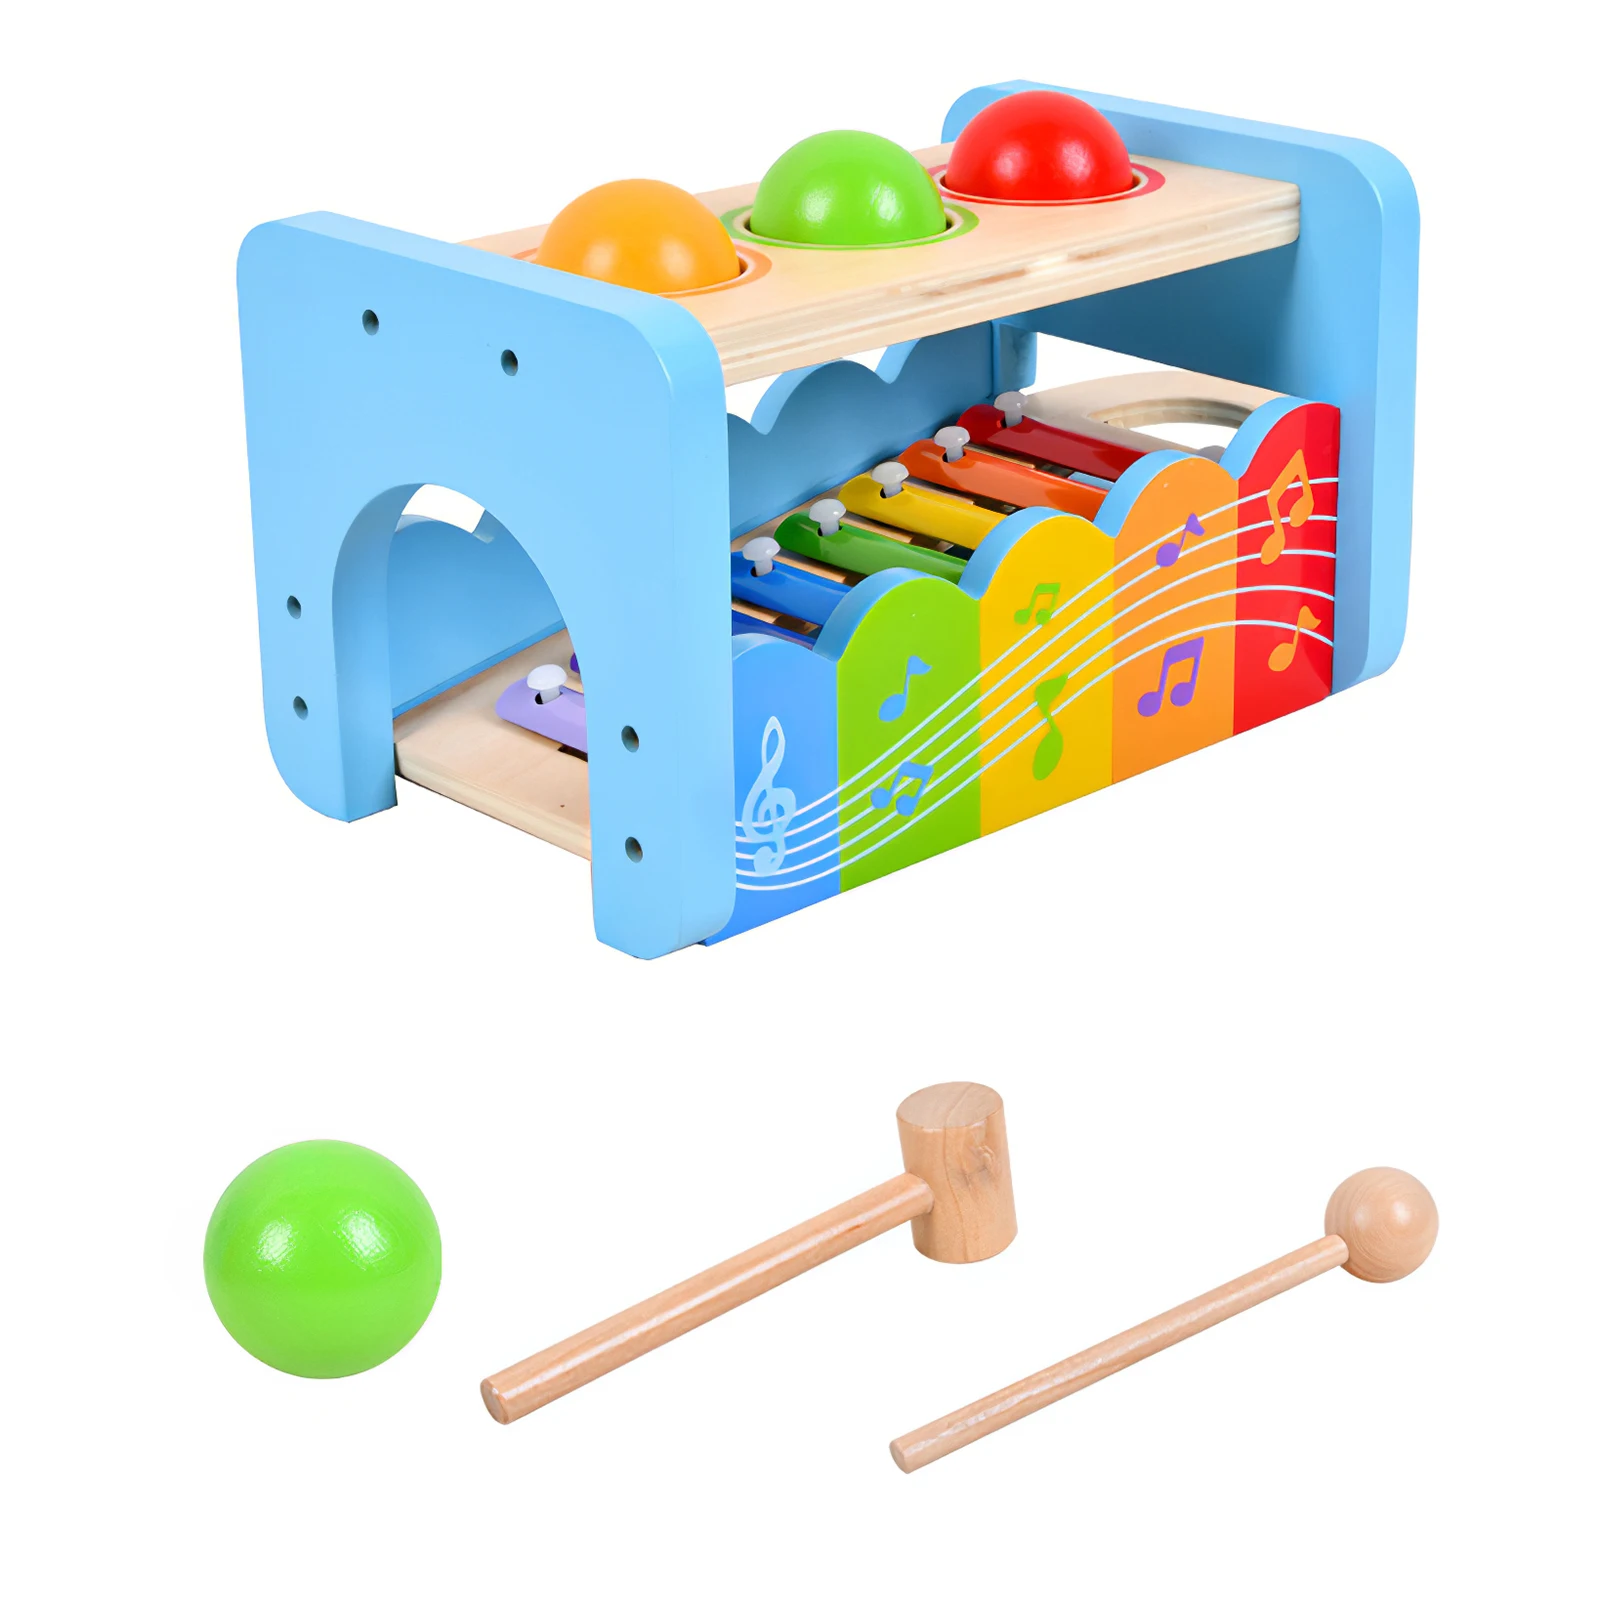 

Детский Ксилофон 2 в 1, деревянная игрушка Whac-A-родинка, Ранняя музыка, цветное просвещение, развитие моторических навыков, музыкальная игруш...